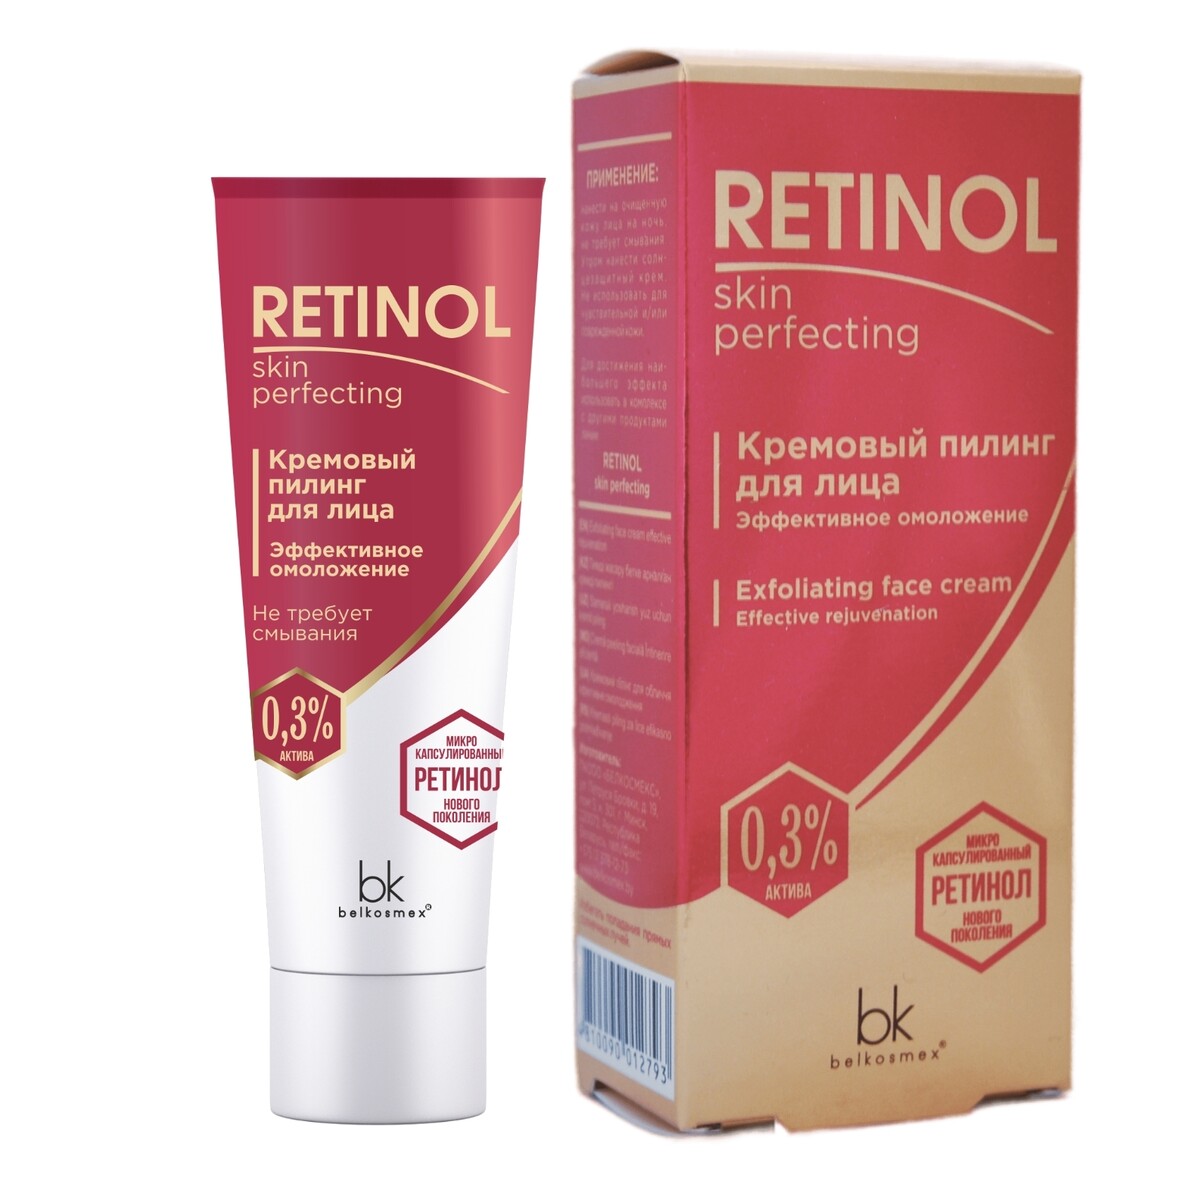 Retinol skin perfecting       30